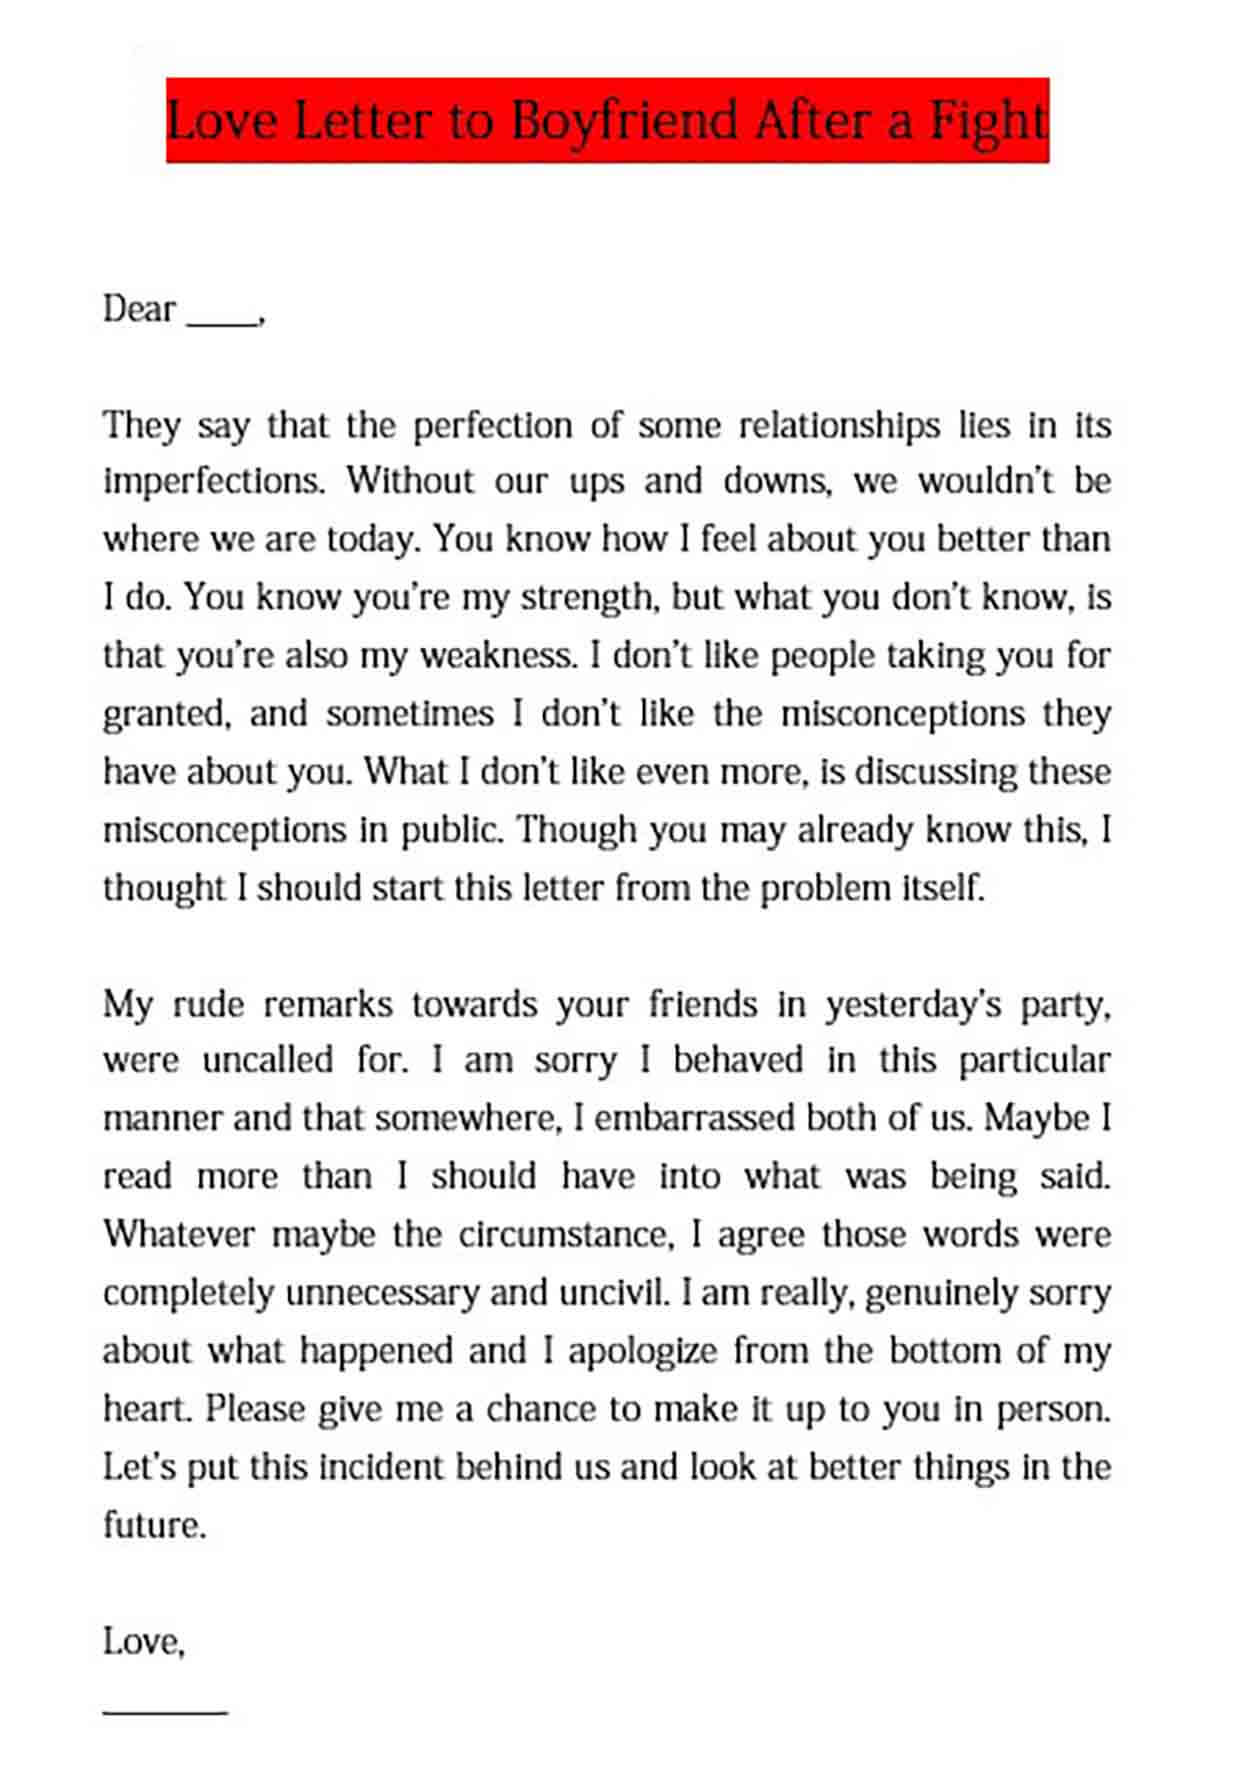 love letter to boyfriend after misunderstanding